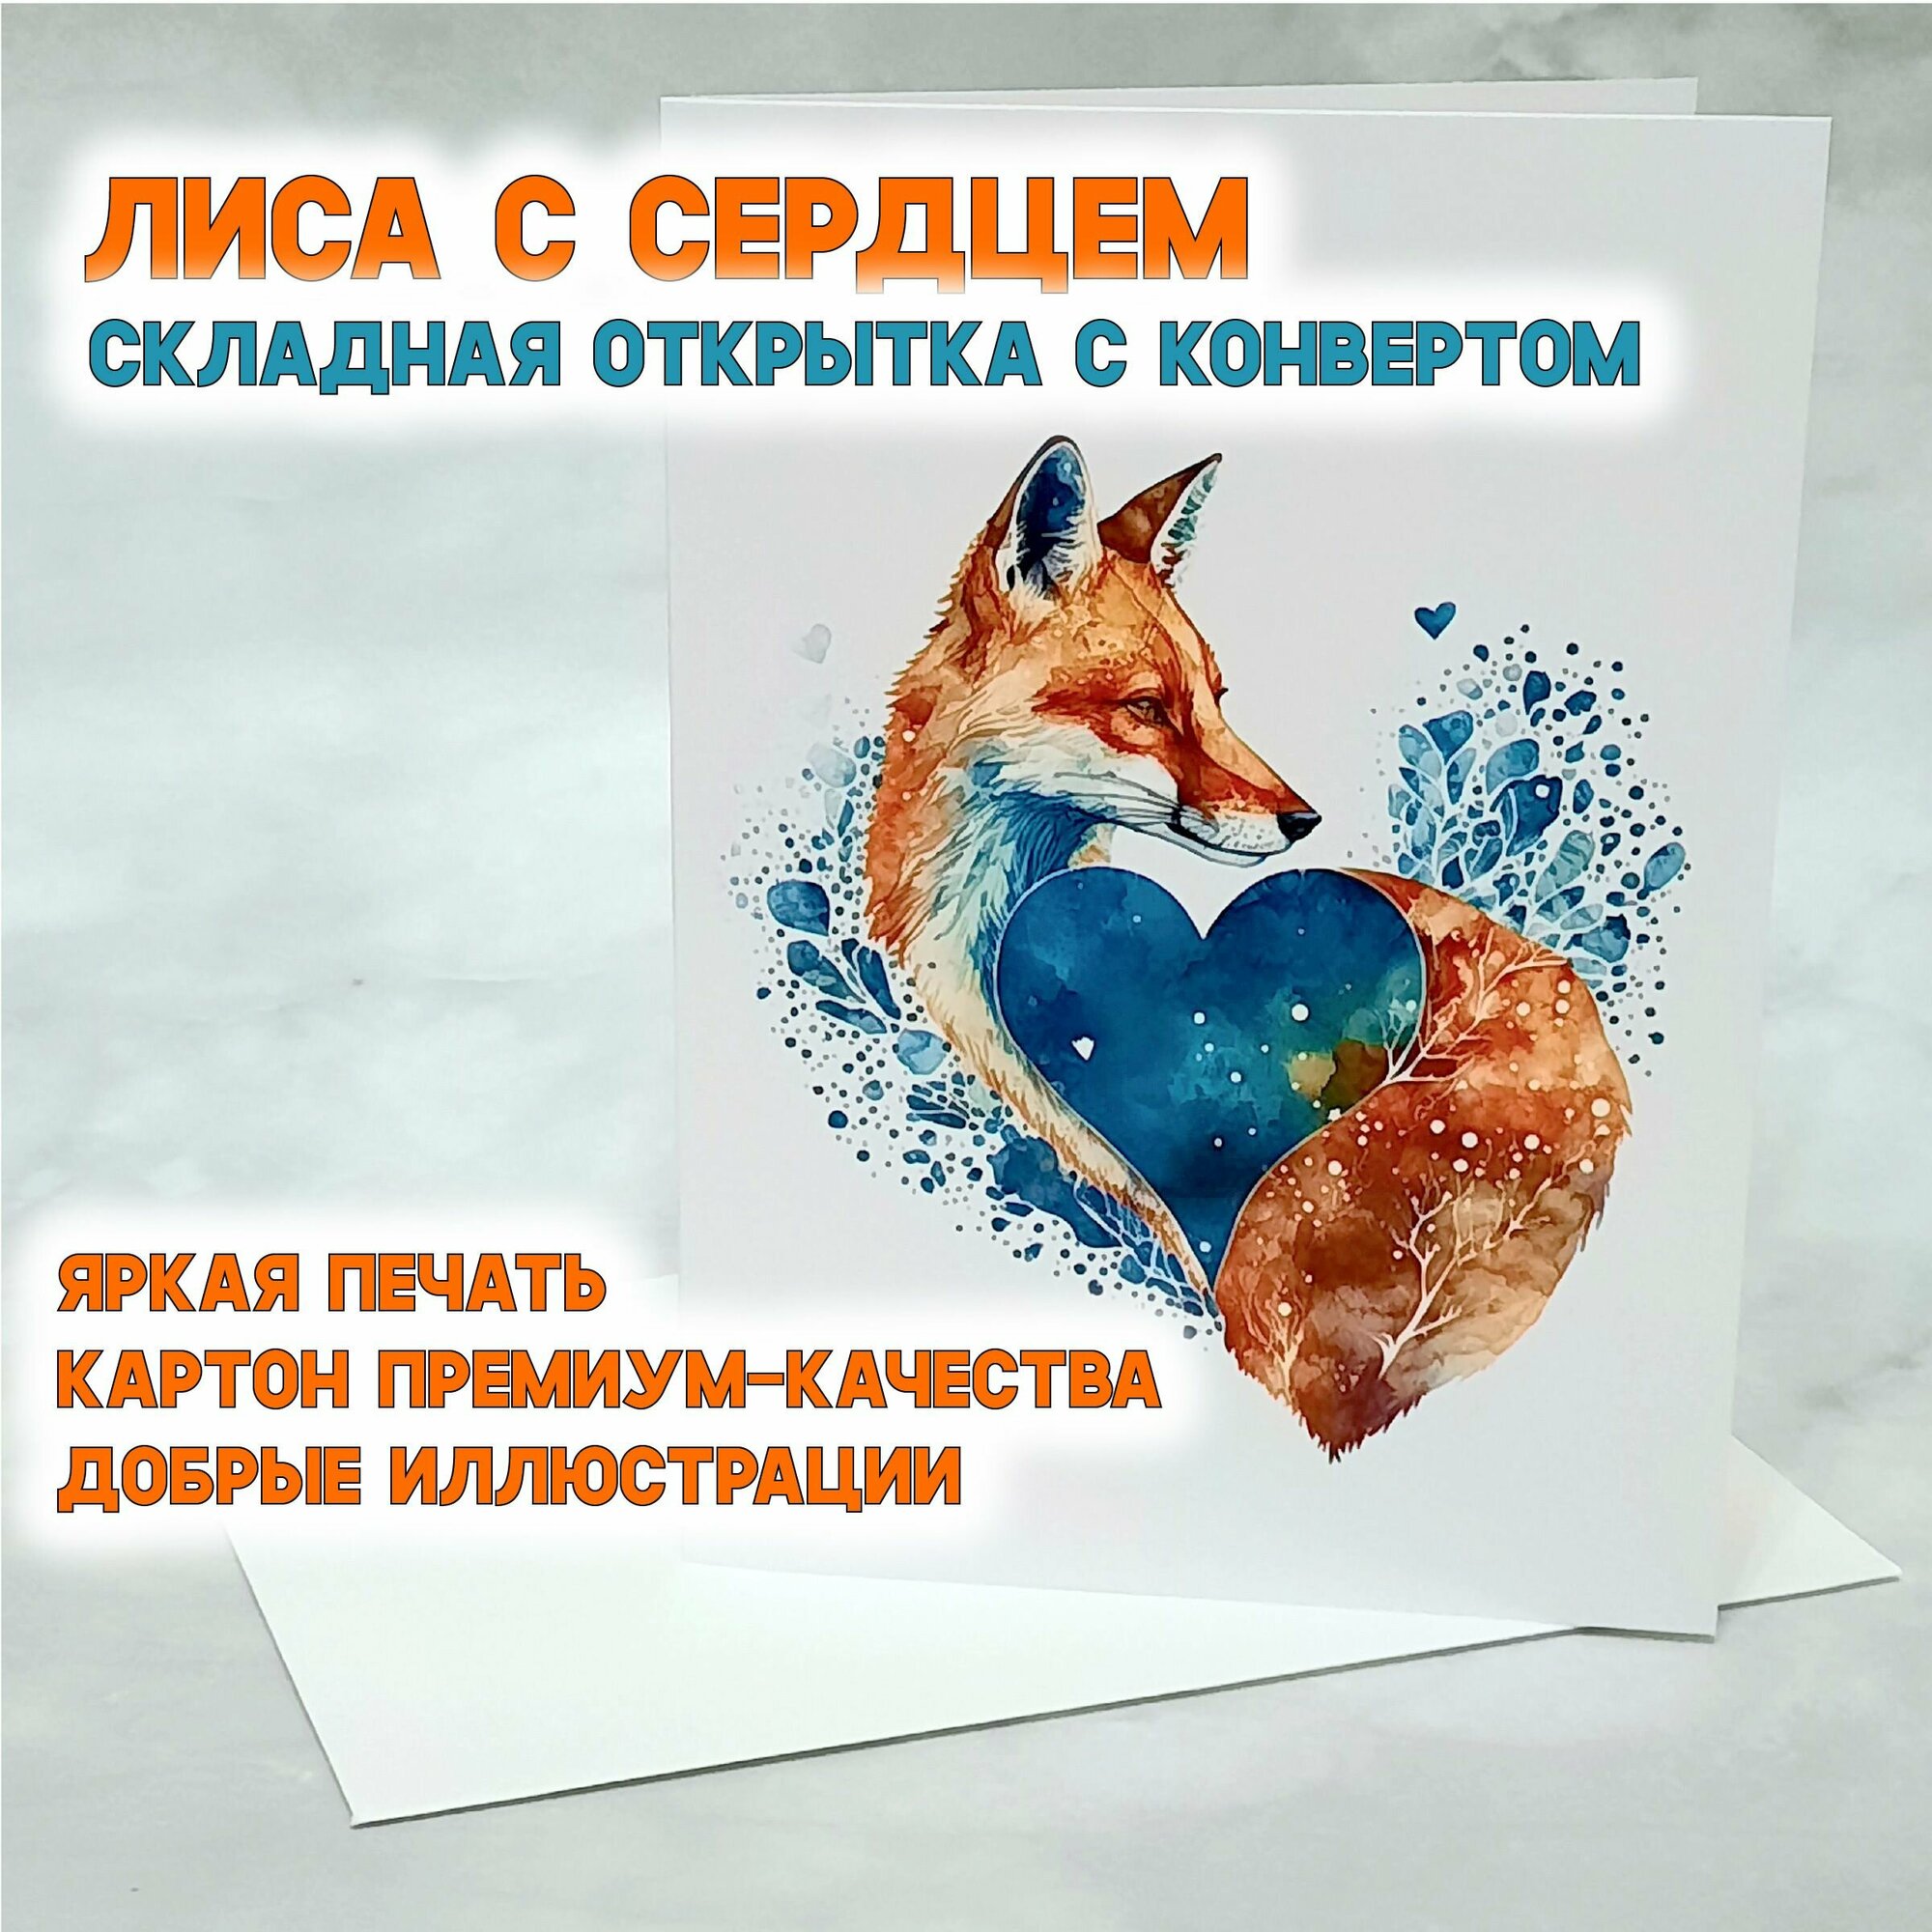 "Лиса с сердцем", открытка 10x15 складная подарочная без надписей, с конвертом, валентинка в подарок любимому человеку, для любителя животных